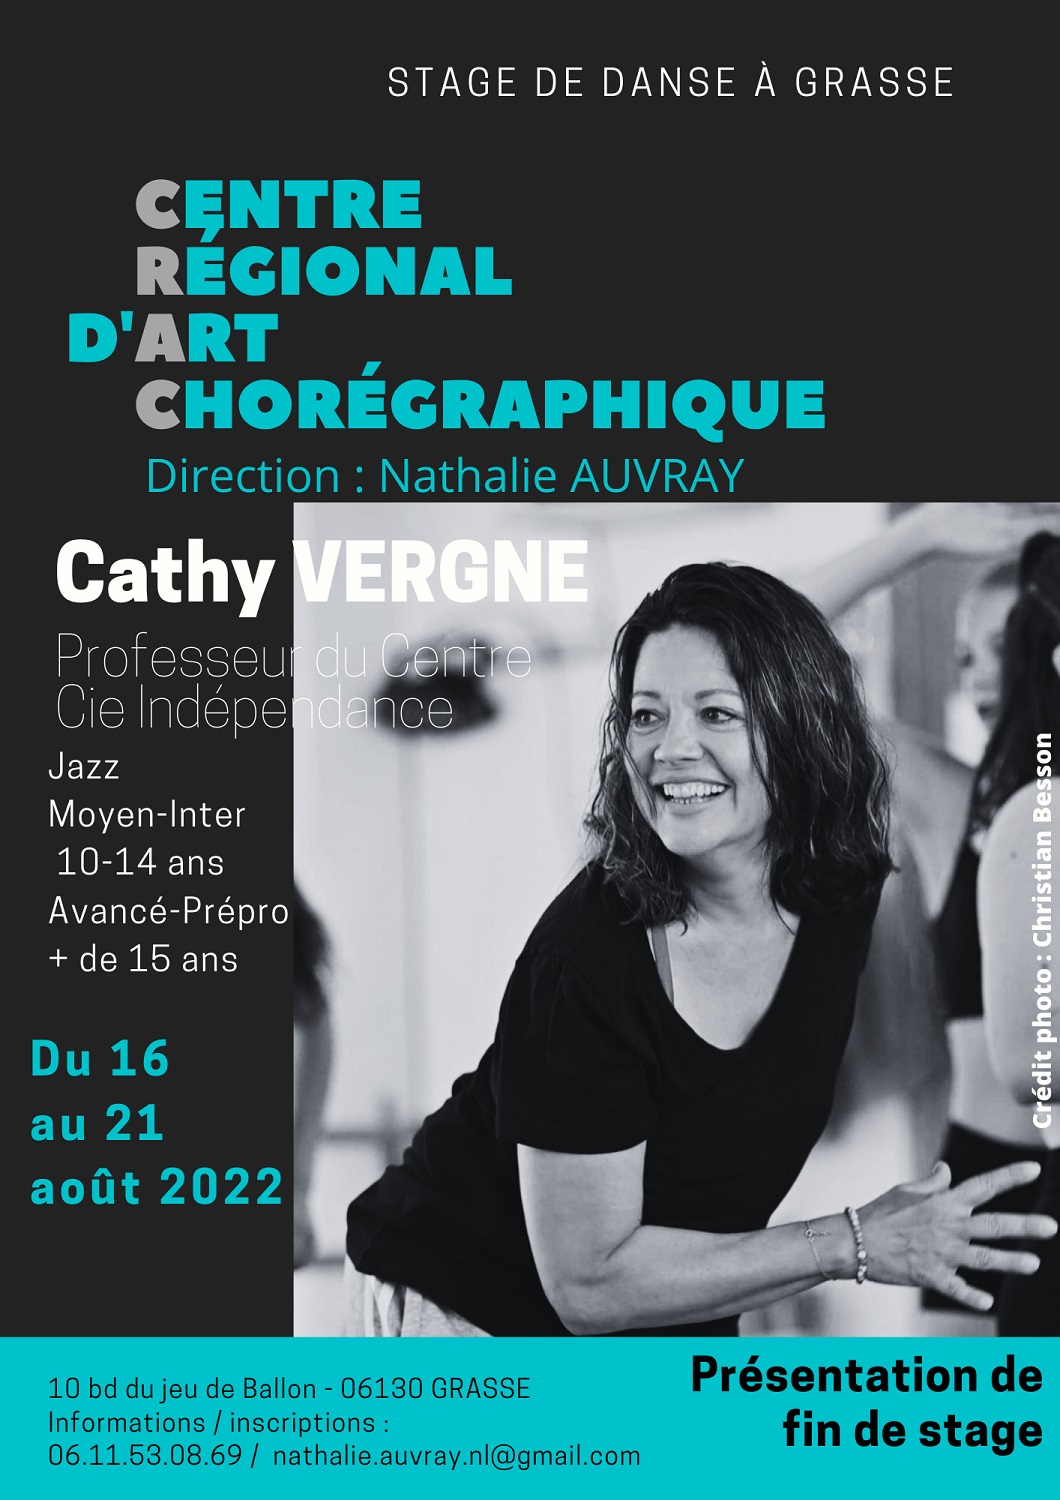 Cathy Vergne